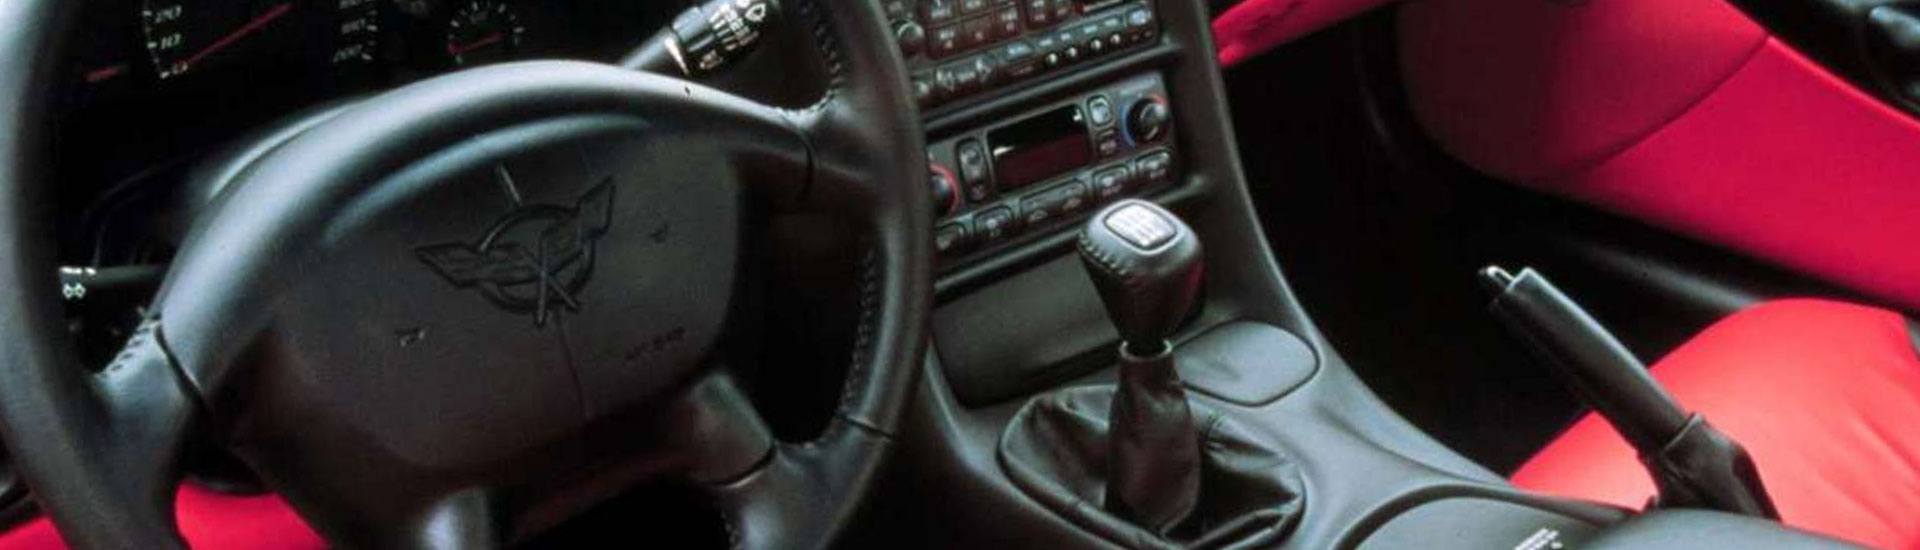 2001 Chevrolet Corvette Dash Kits